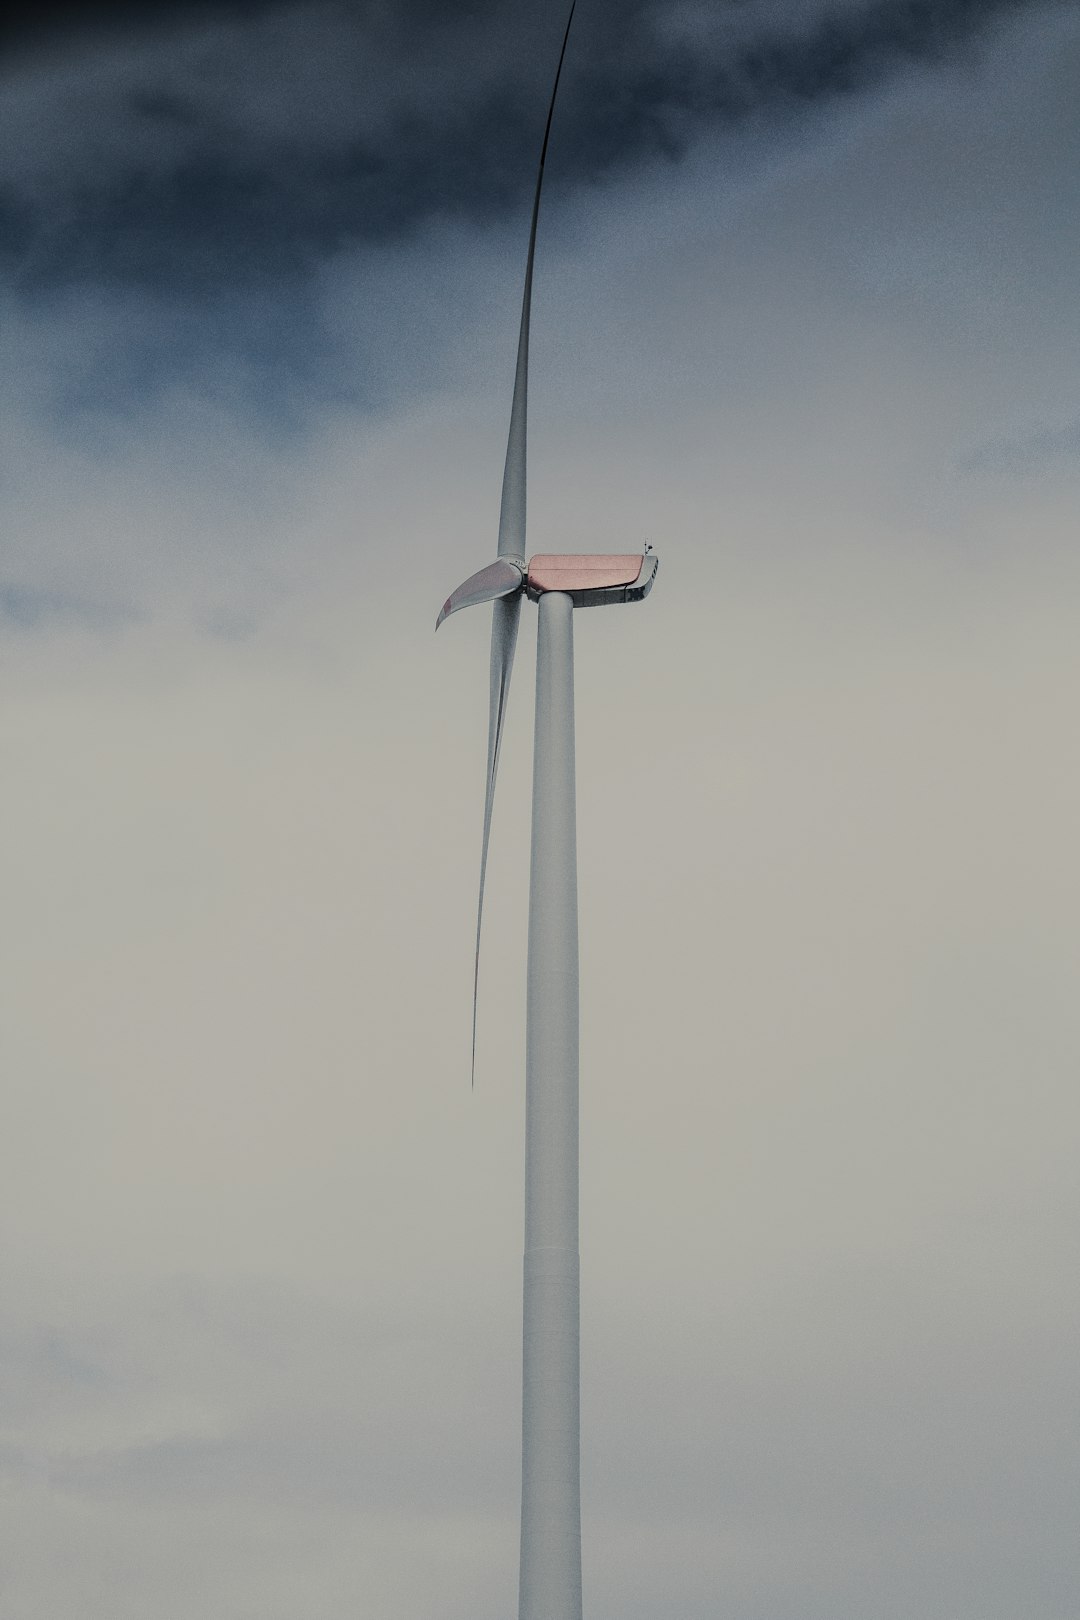 white wind turbine under gray clouds